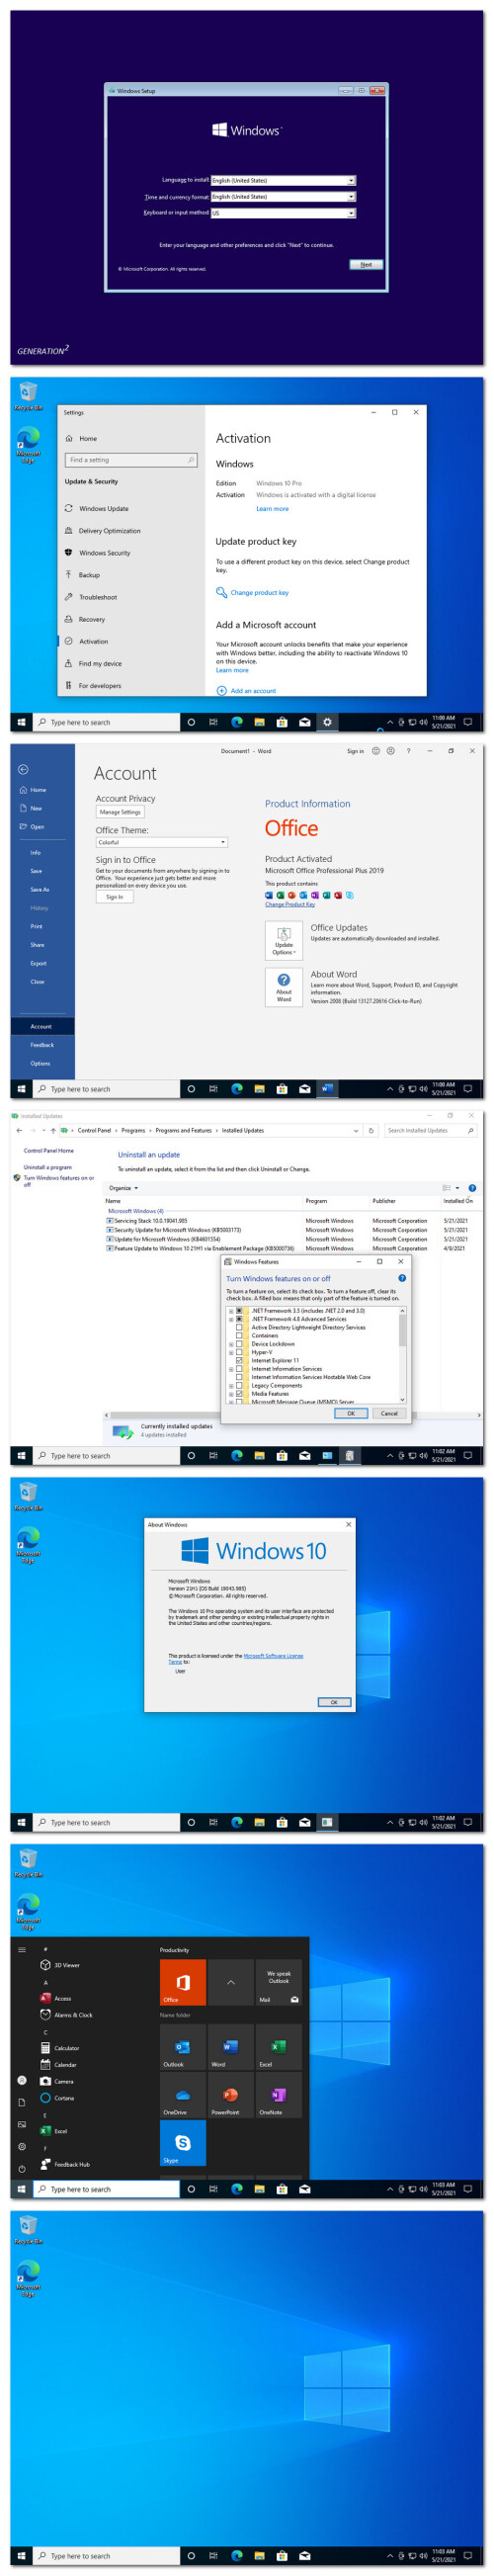 Windows 10 X86 Pro 21H1 incl Office 2019 en-US MAY 2021 {Gen2}